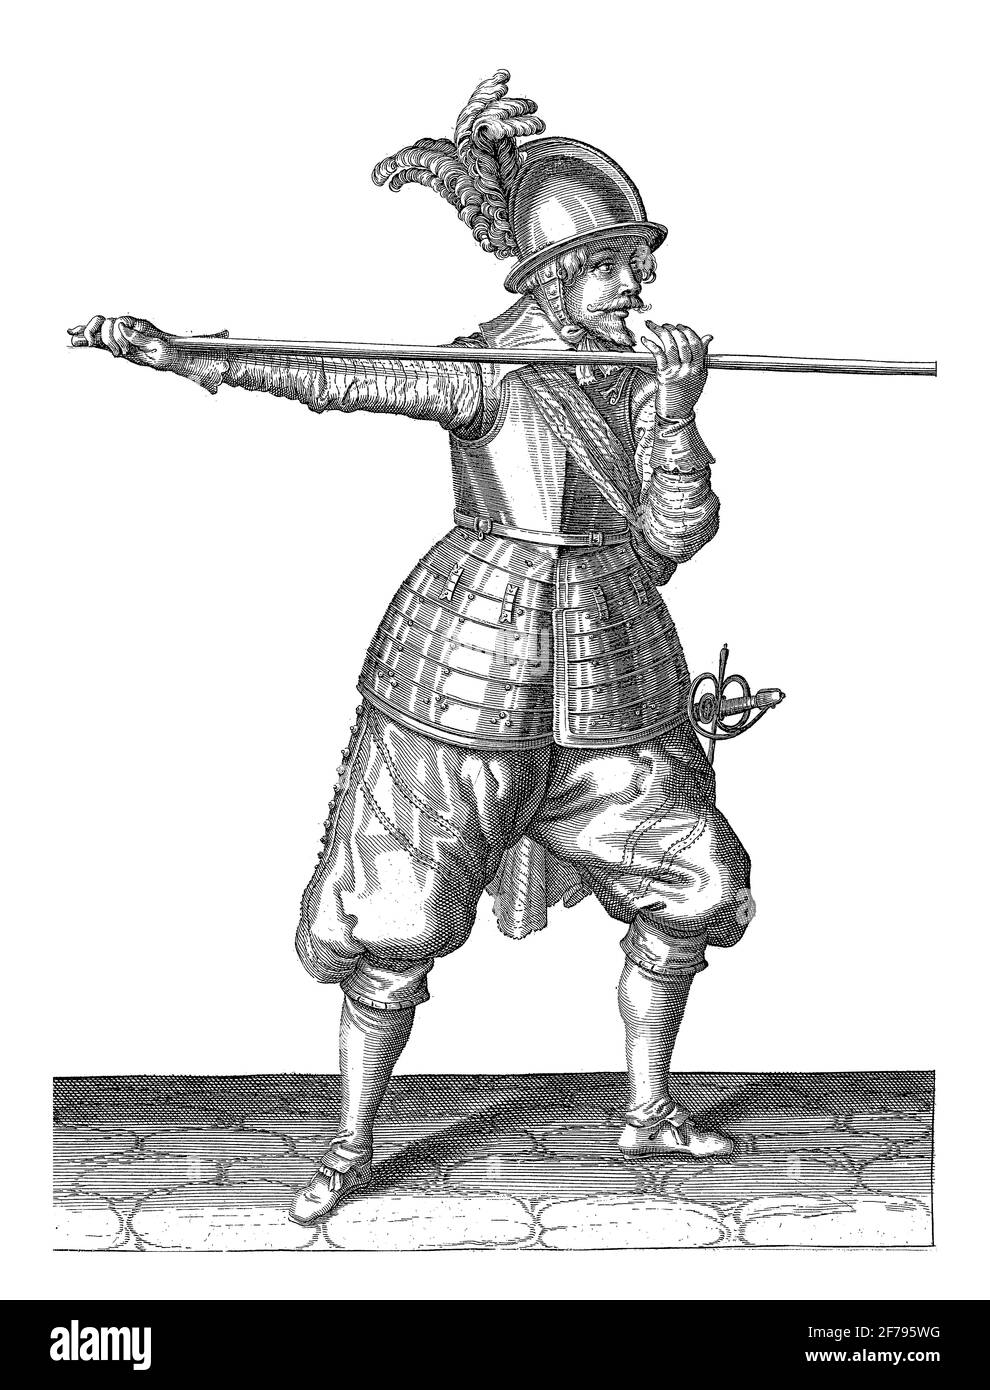 Un soldat de pleine longueur portant une lance (lance) avec les deux mains horizontalement à hauteur d'épaule avec sa main droite à la base de l'arme, vintage Banque D'Images